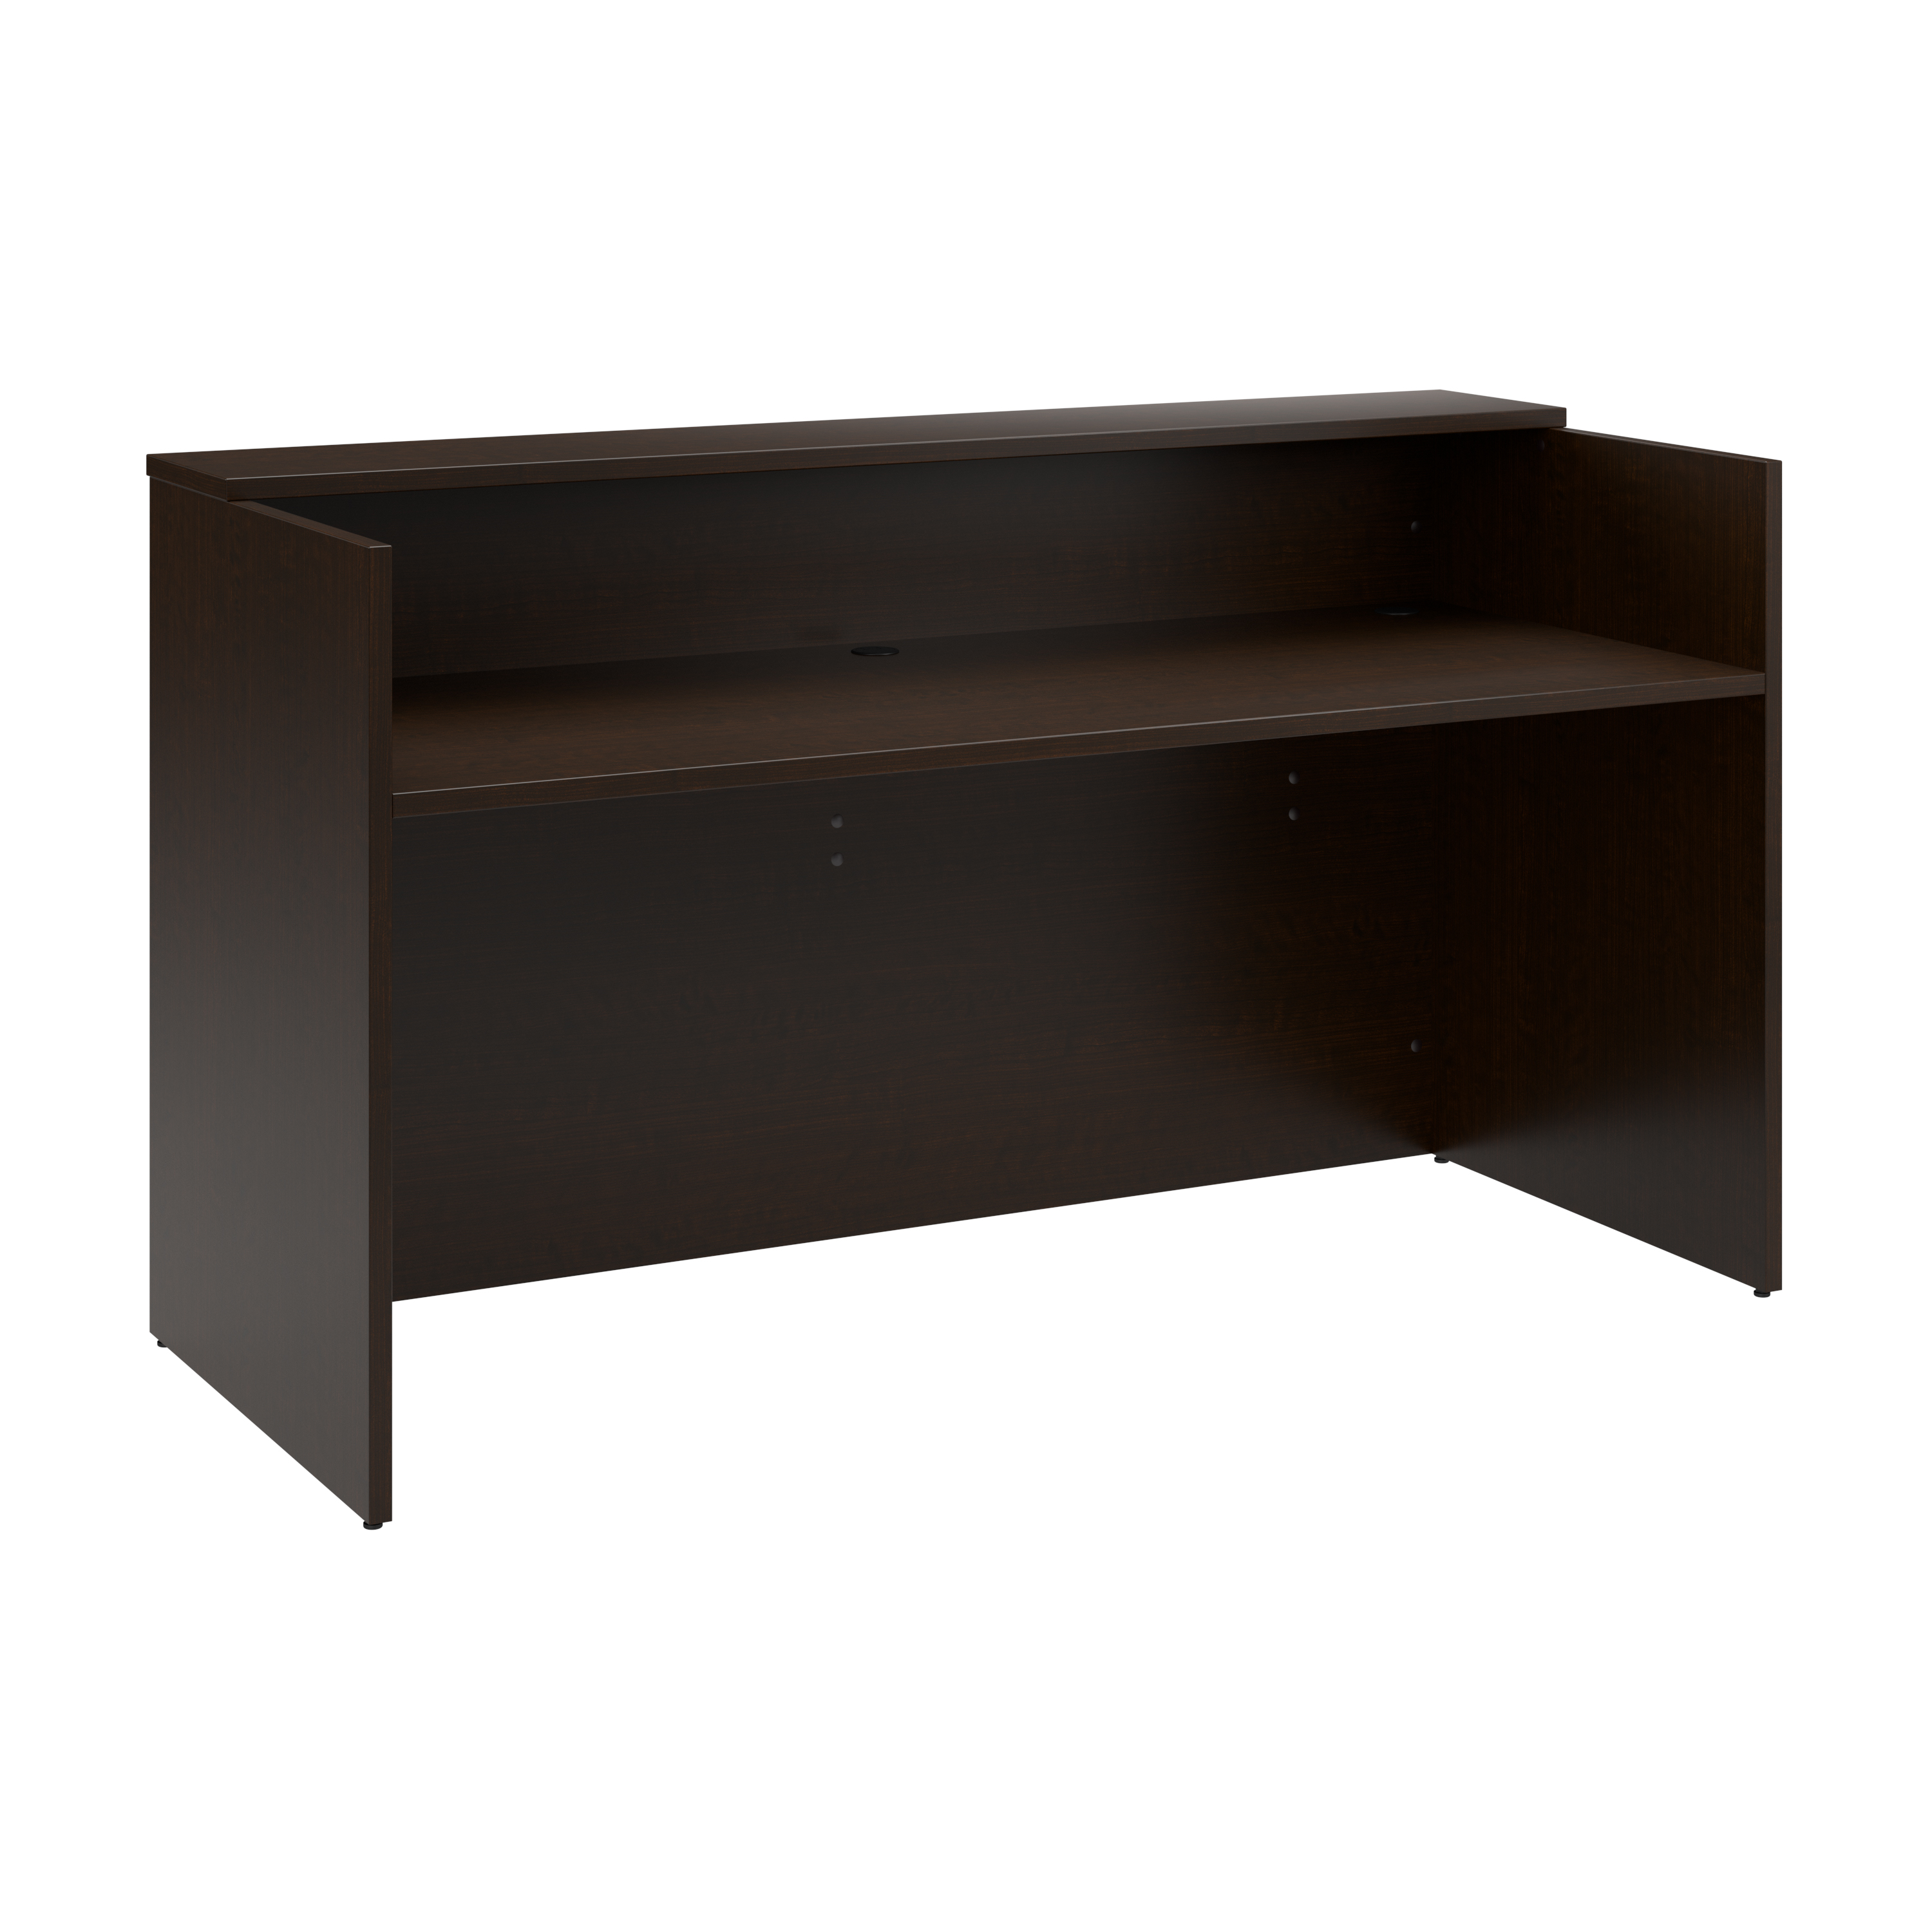 Shop Bush Business Furniture Arrive 72W x 30D Reception Desk with Shelf 02 AVD172MRK #color_mocha cherry